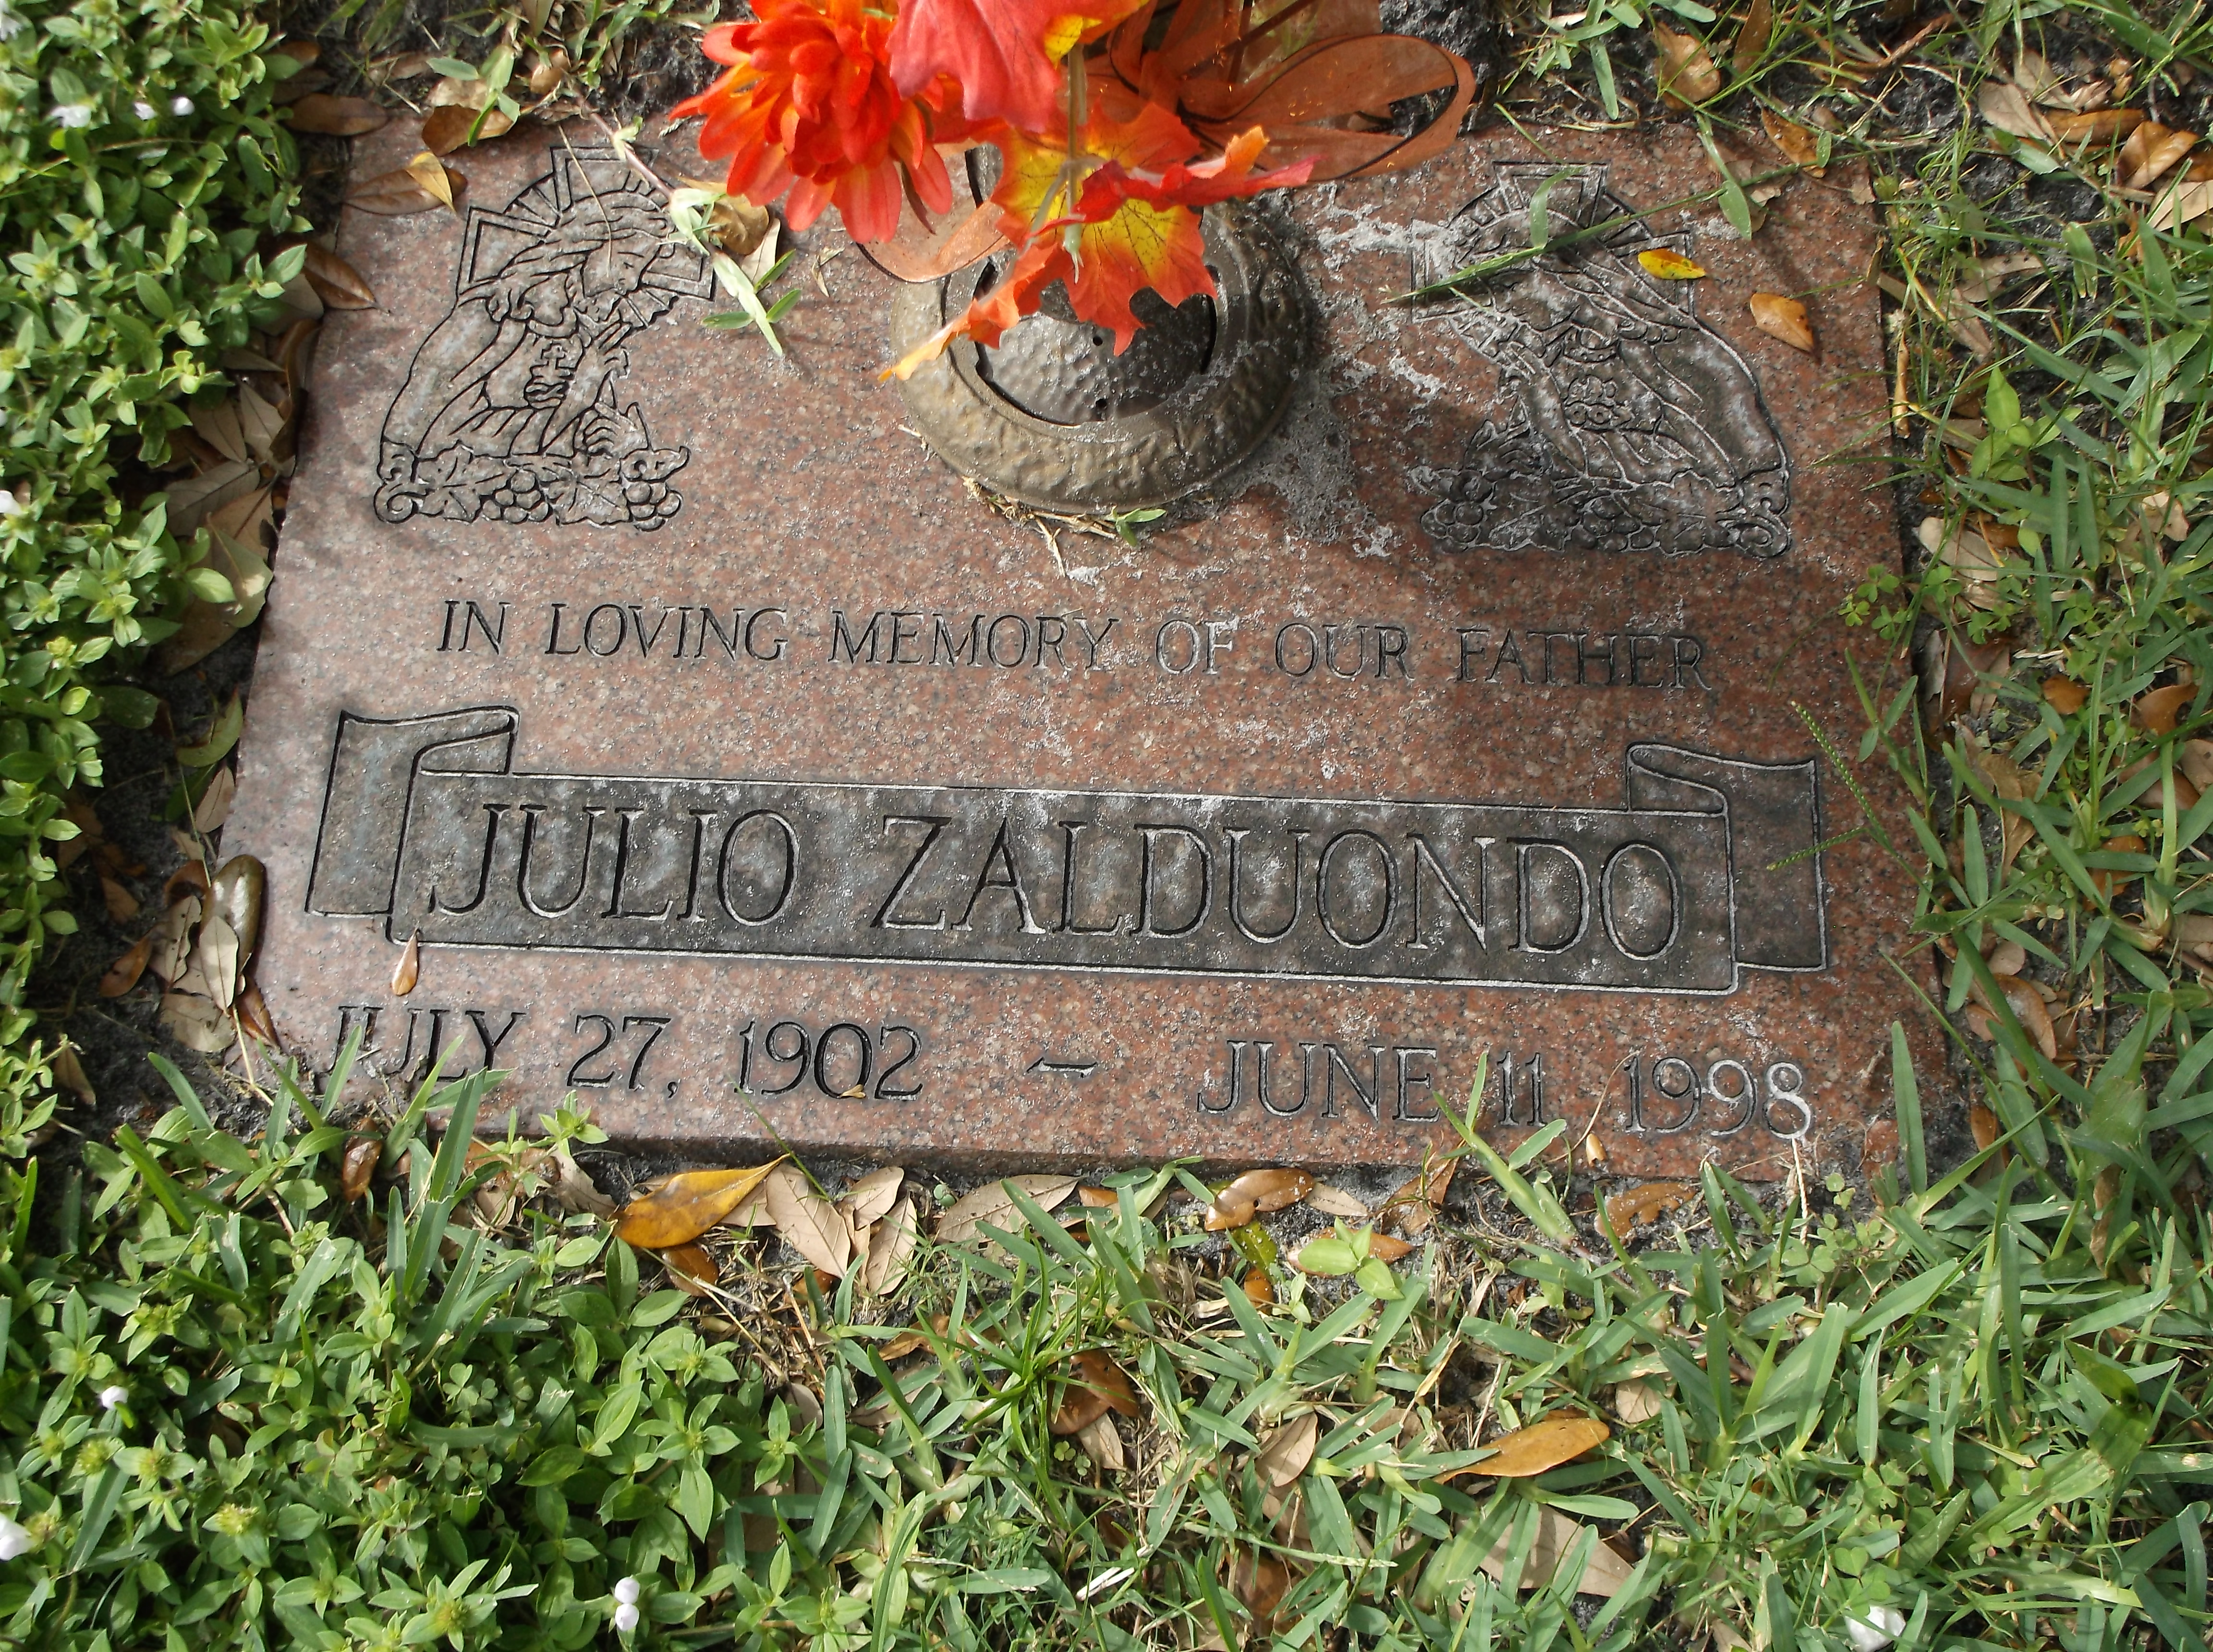 Julio Zalduondo